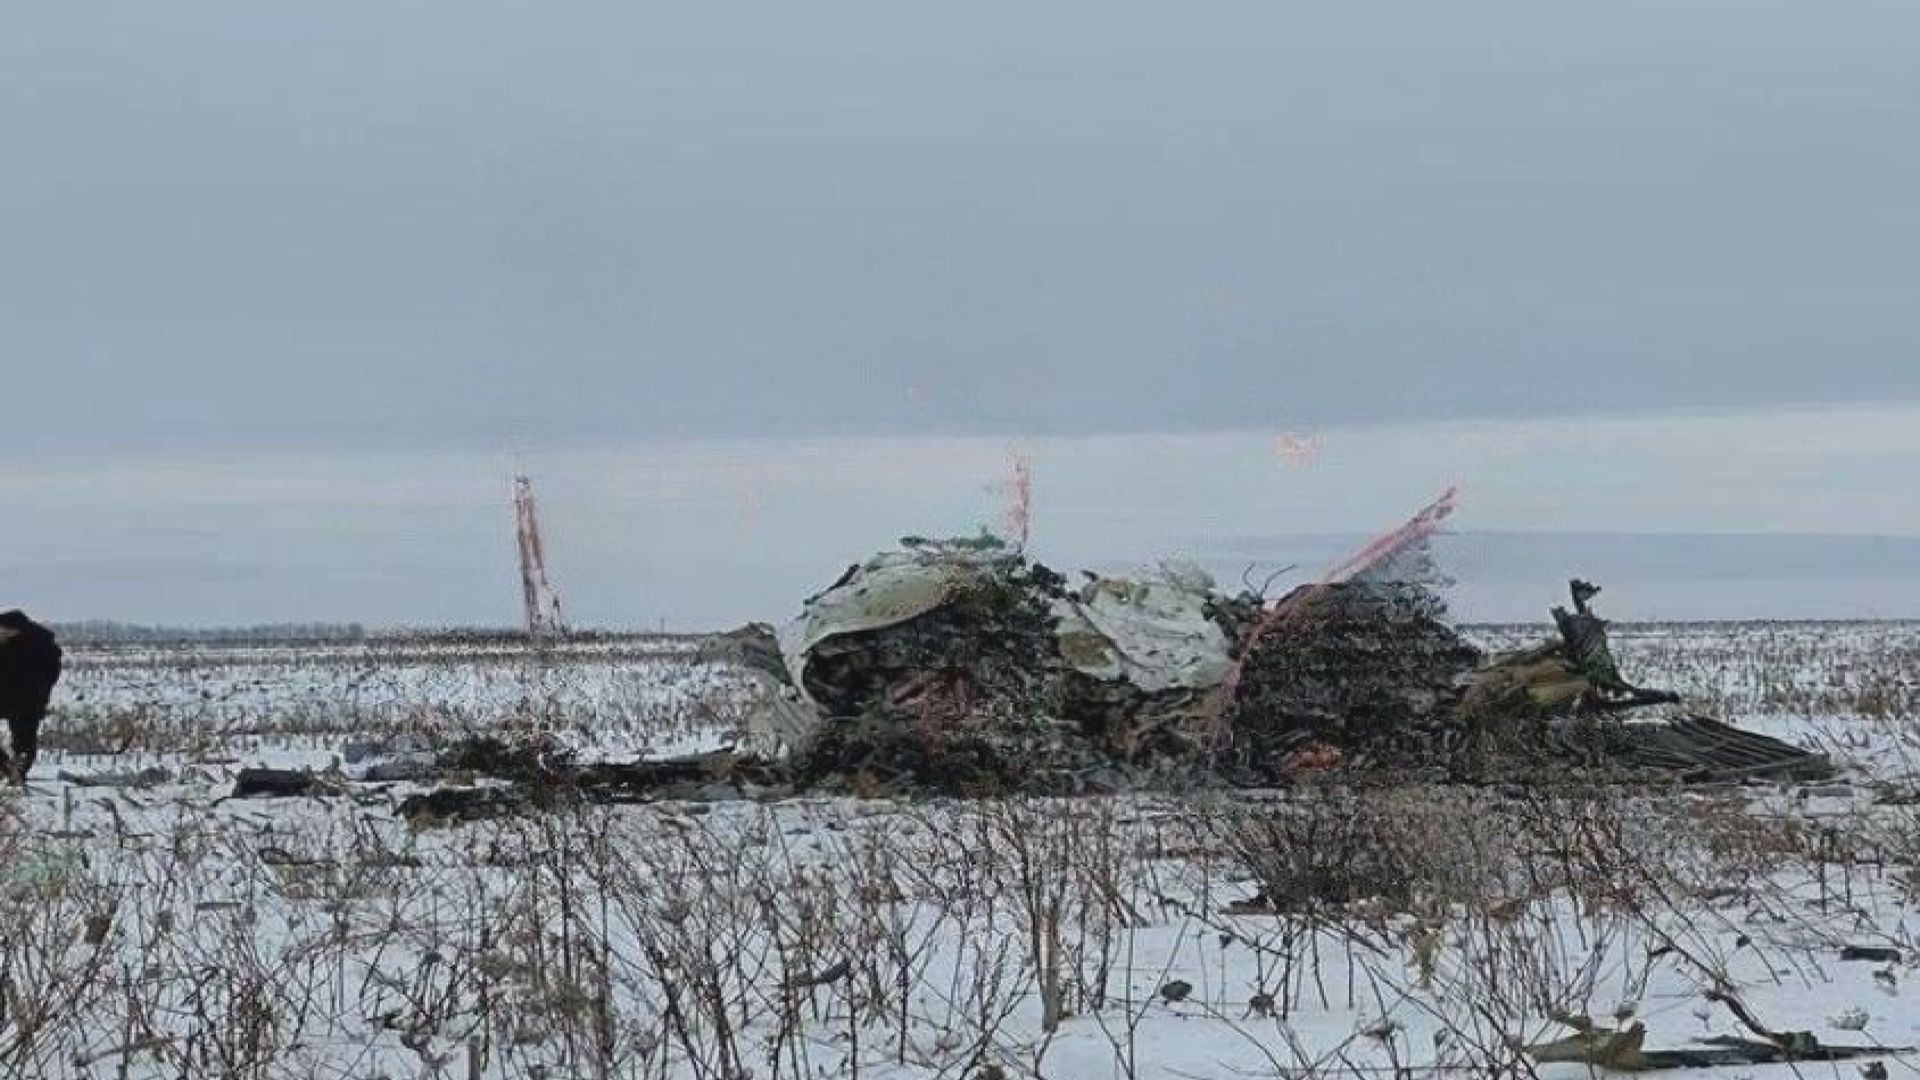 俄媒︰俄軍機失事現場檢導彈碎片 烏克蘭倡國際調查